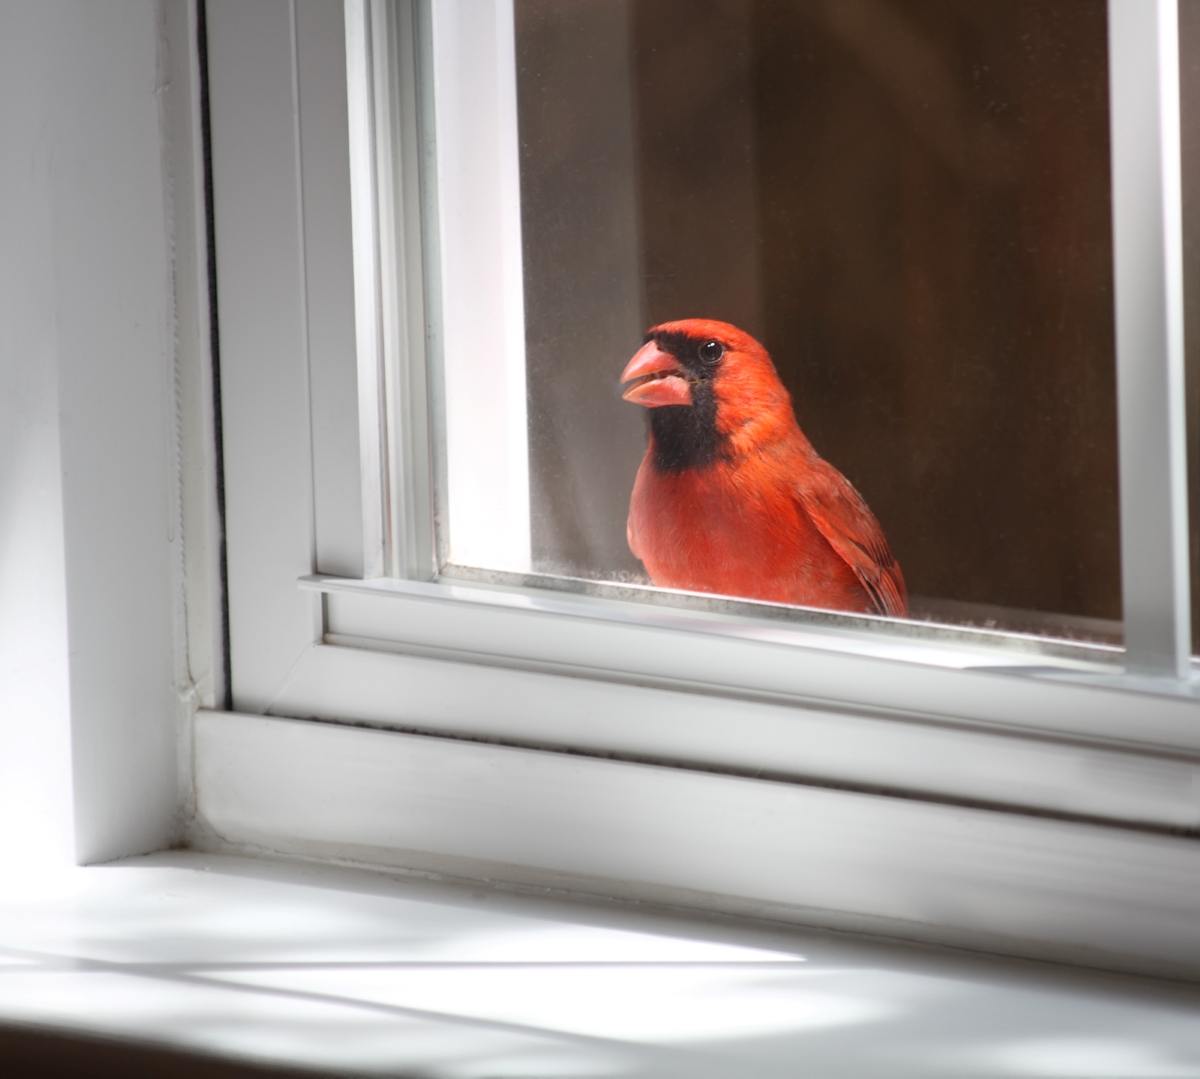 Red bird outside window